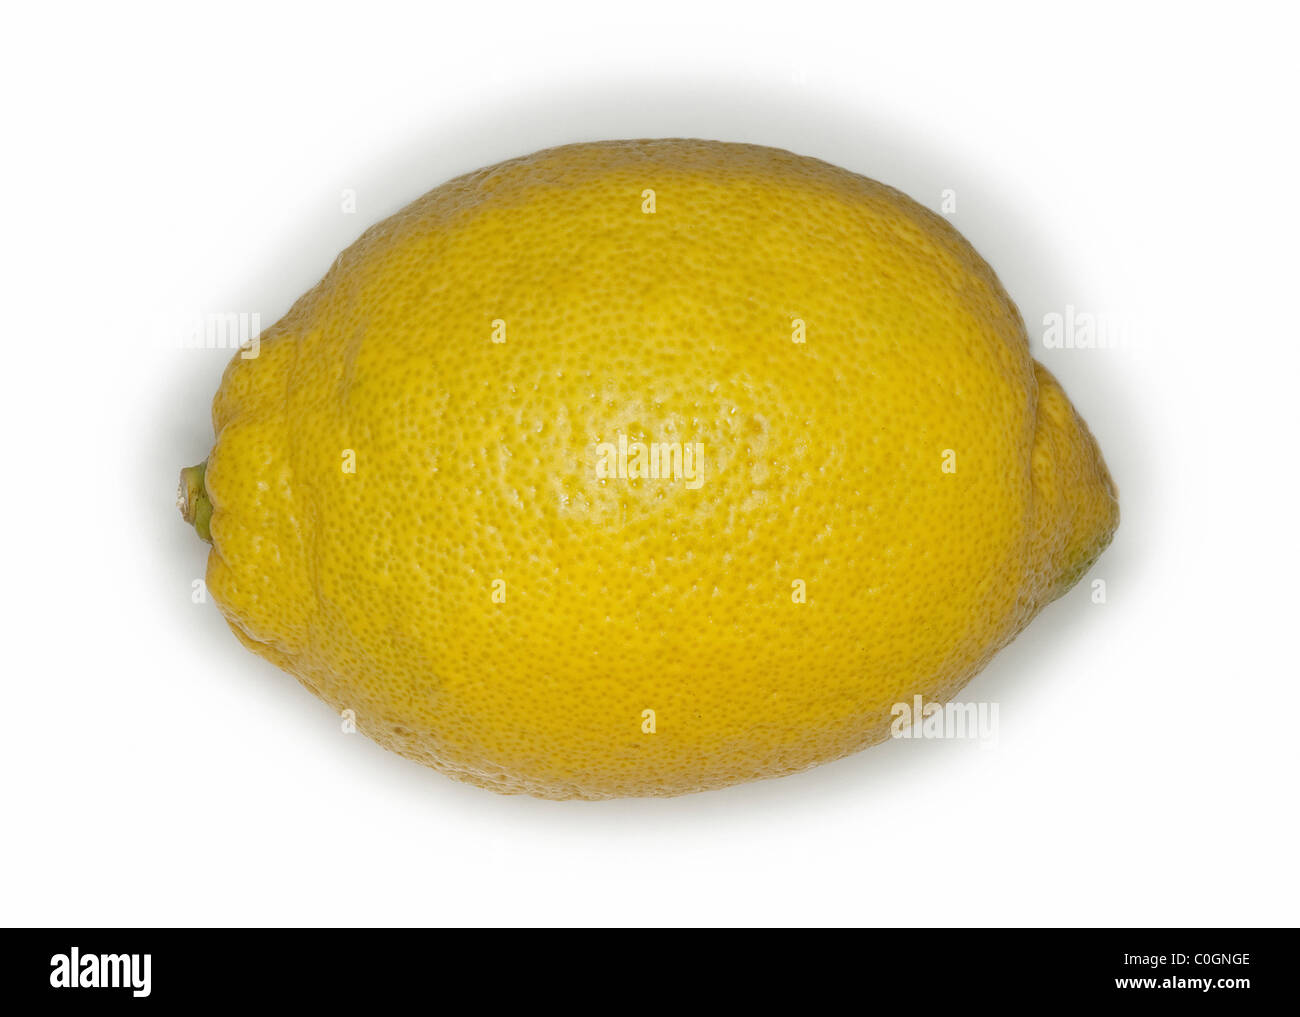 Lemon fruit on white background Stock Photo